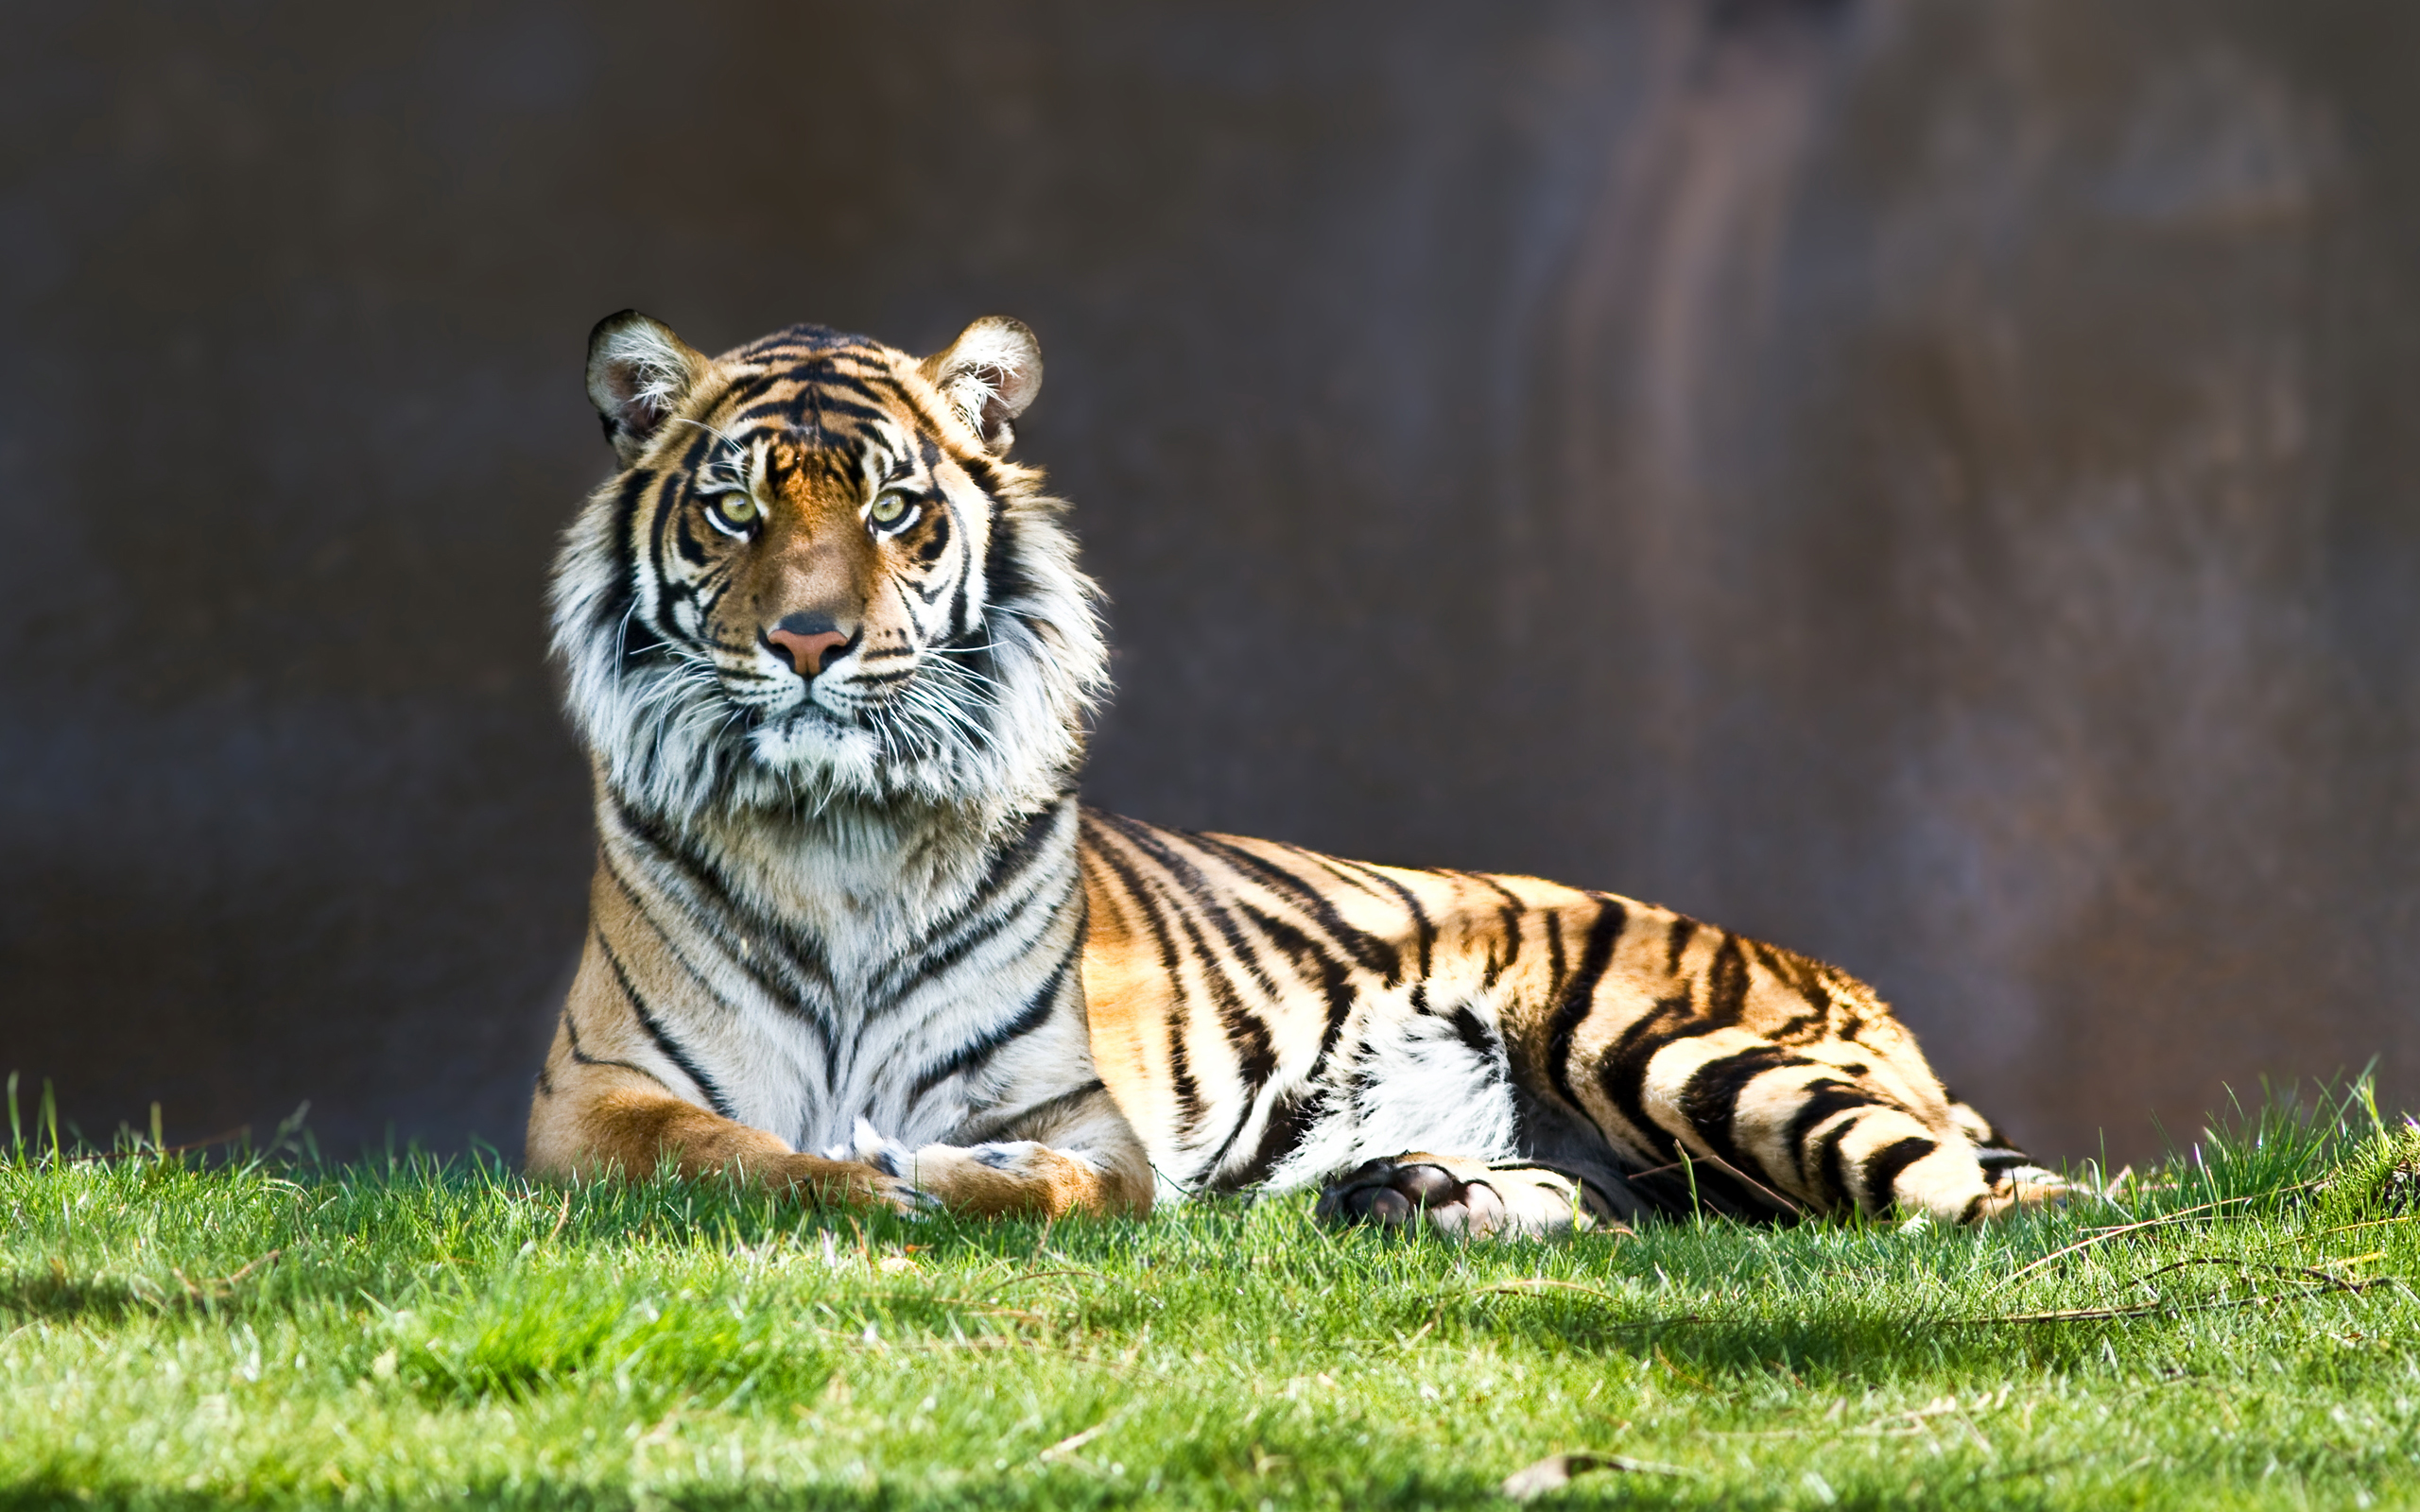 animals, tigers, grass - desktop wallpaper